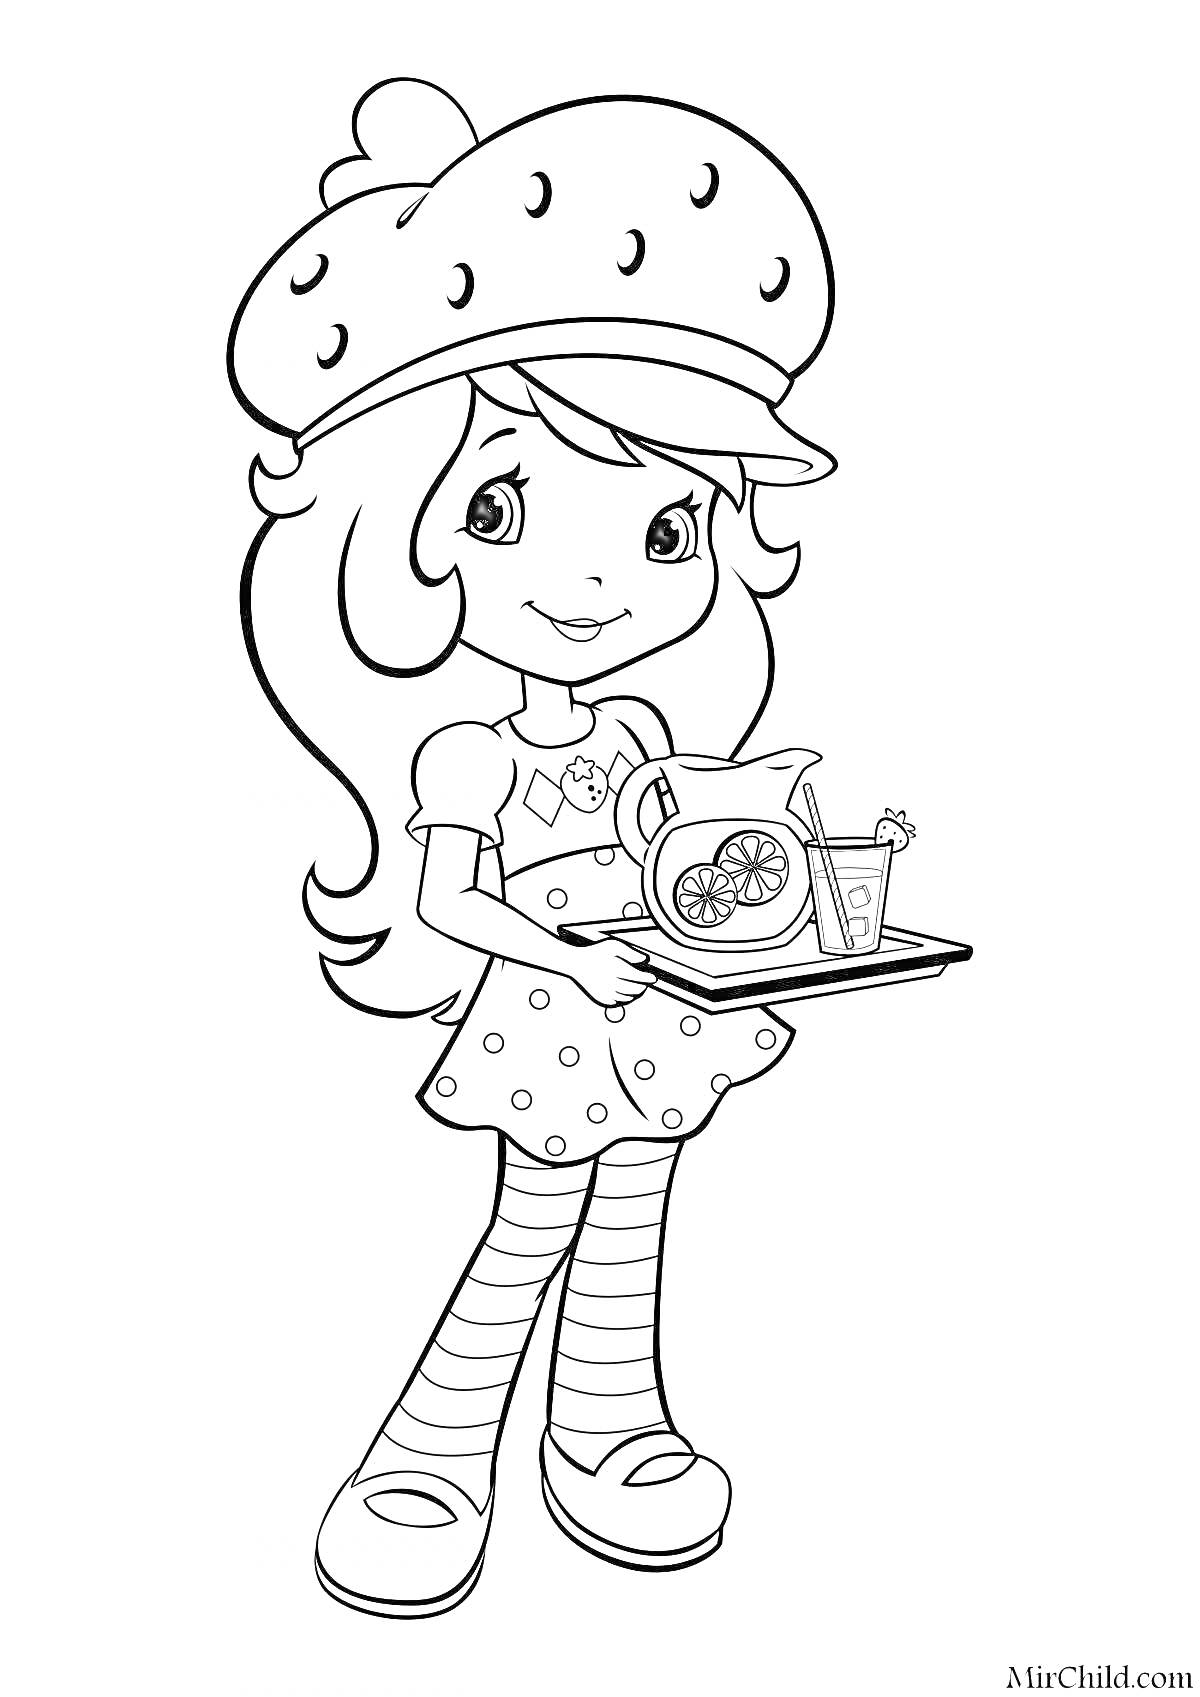 Девочка в шапочке с клубничками, держащая поднос с графином и стаканом лимонада